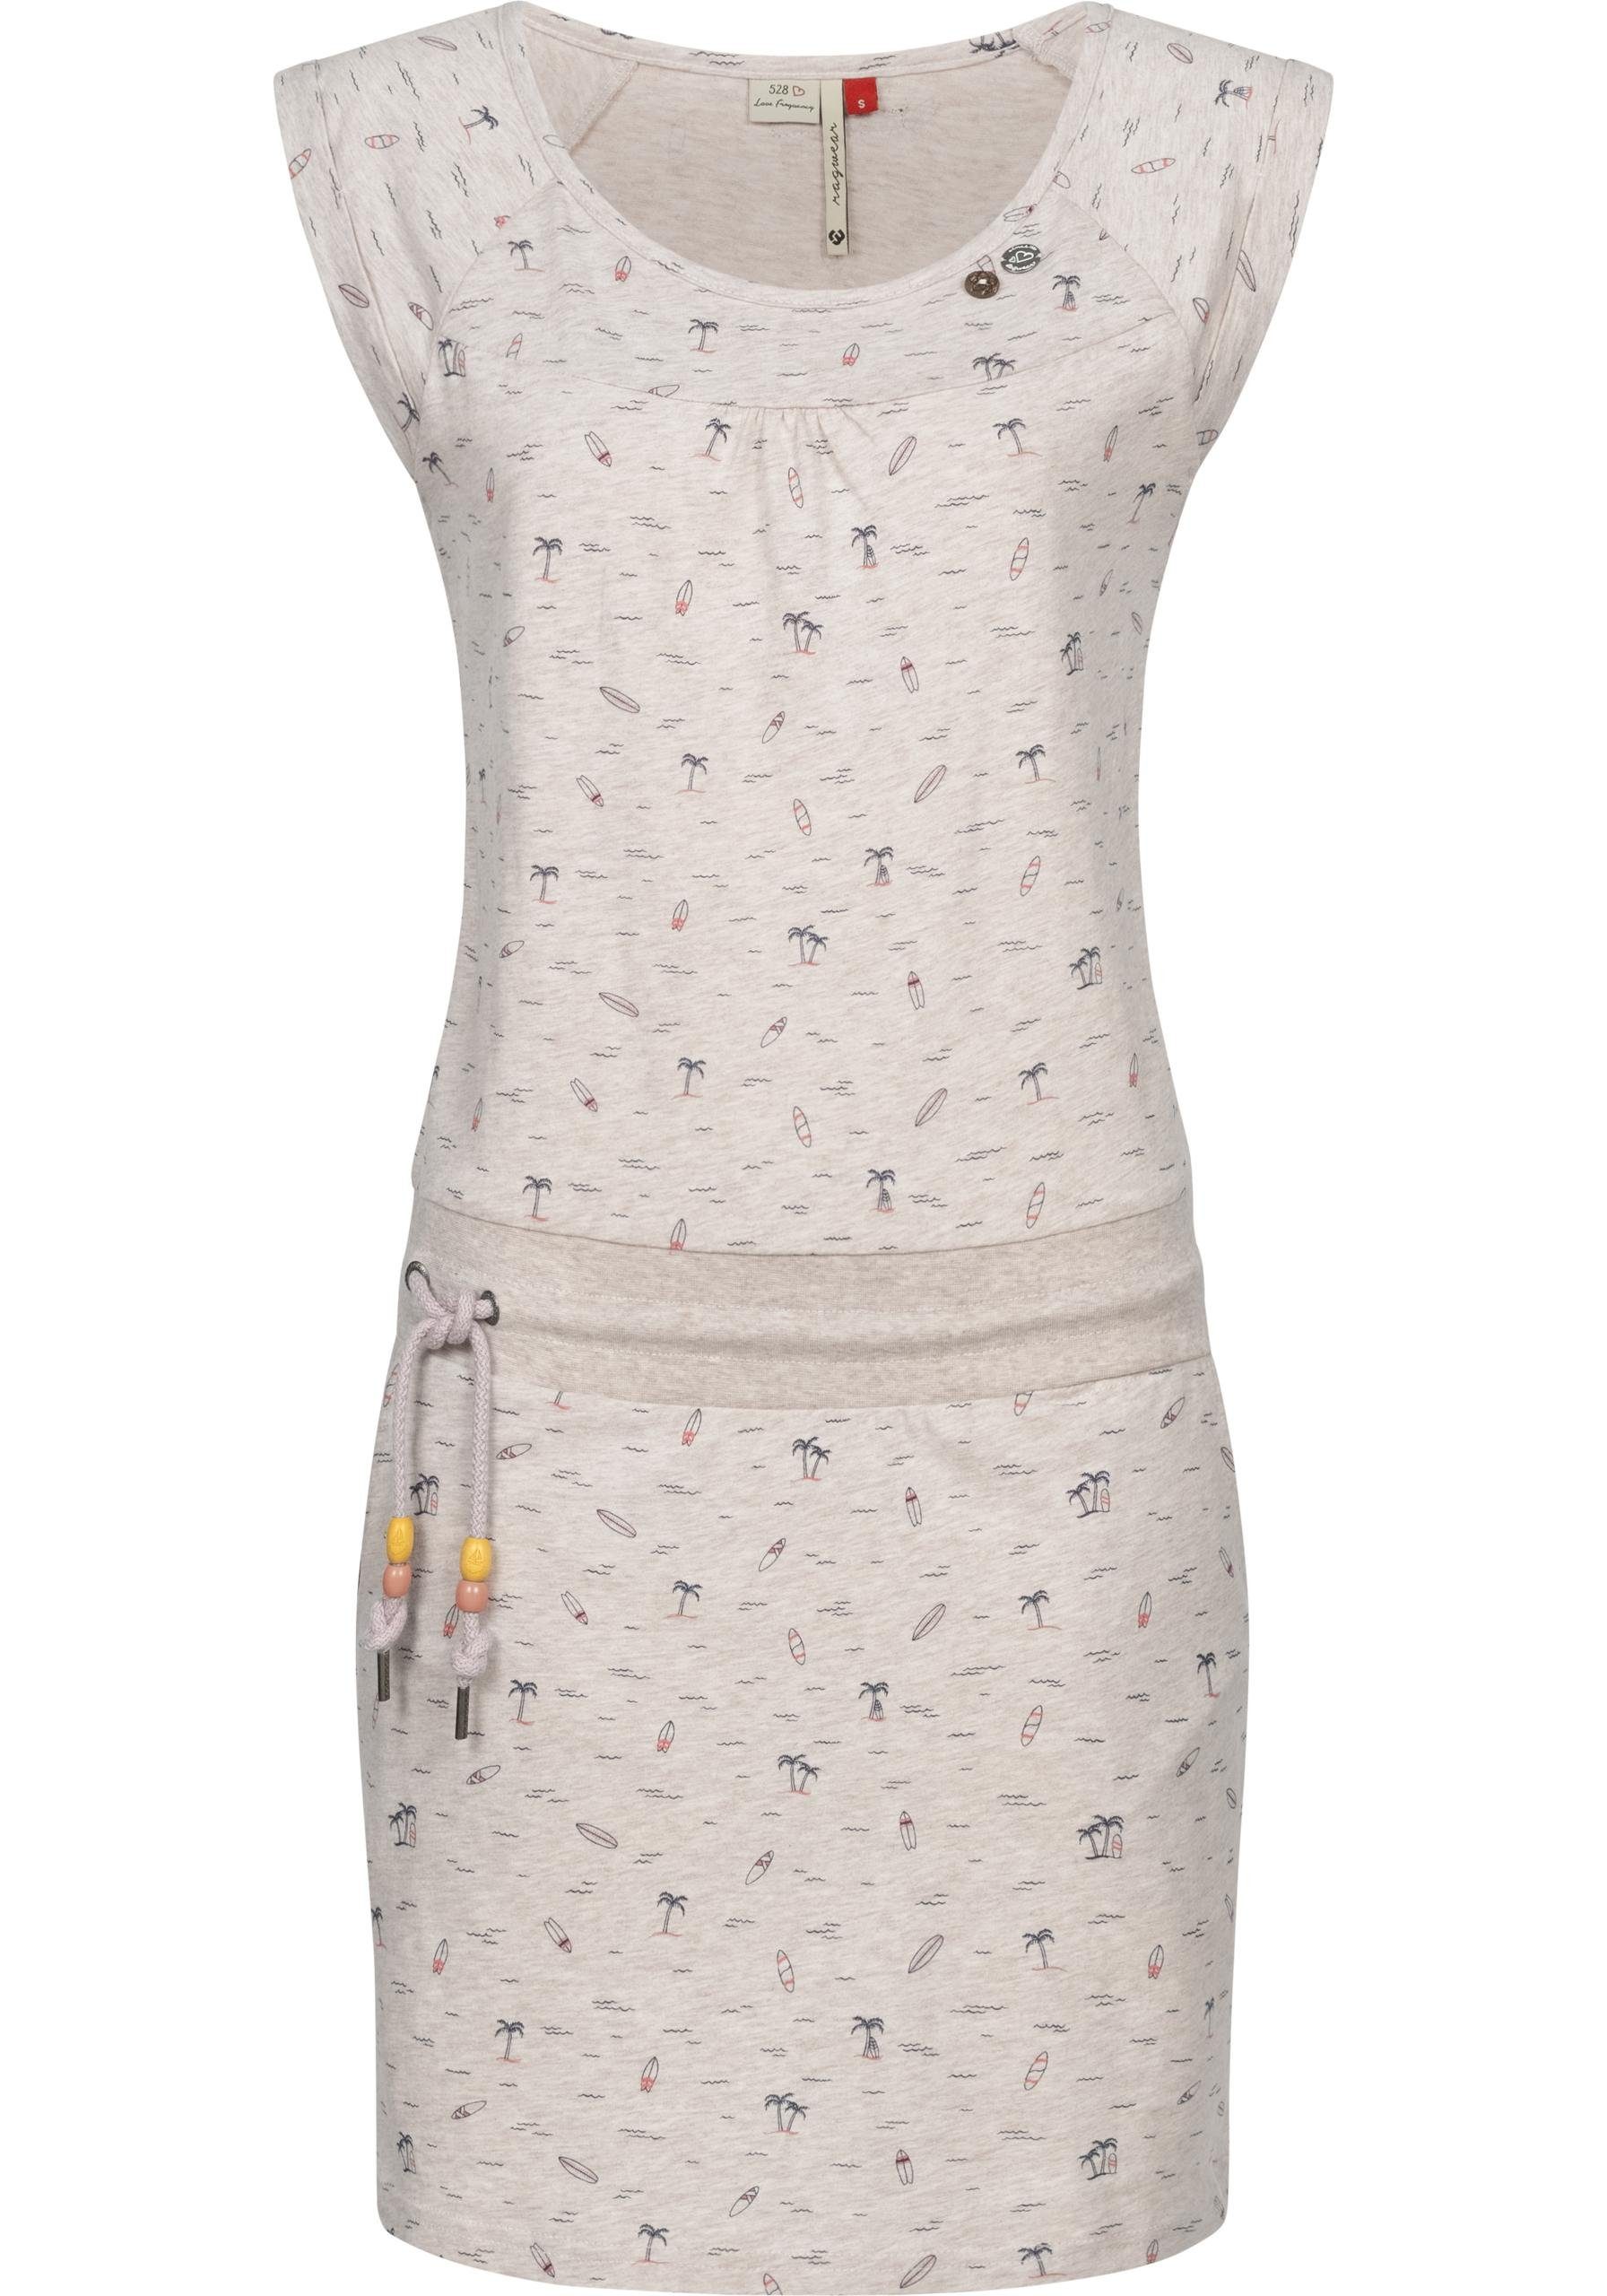 Ragwear Sommerkleid Penelope leichtes Baumwoll Kleid mit Print